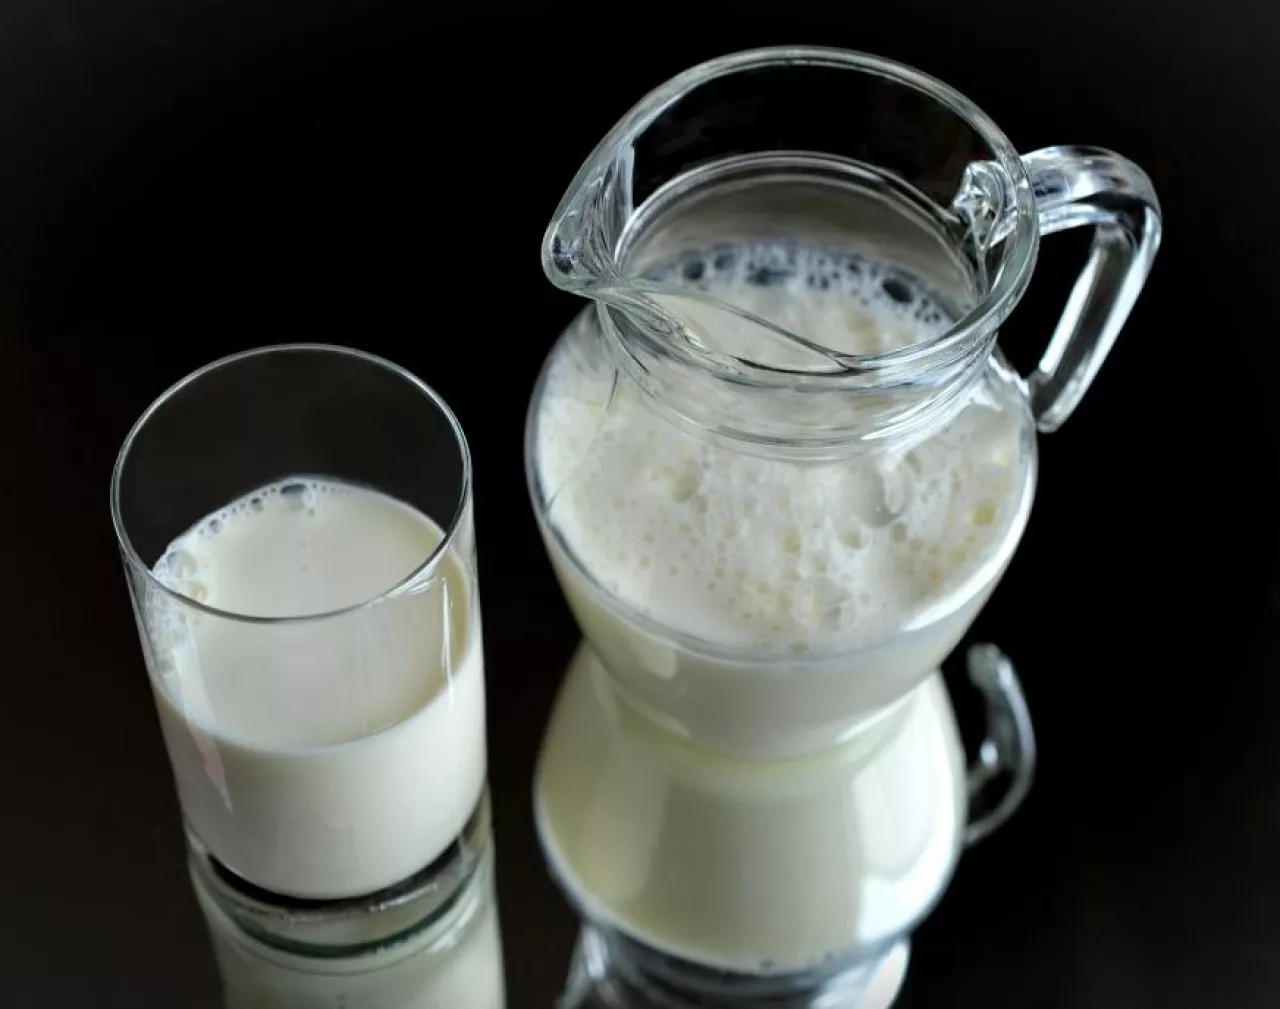 Polscy producenci mleka mogą liczyć na unijne dopłaty będące reakcją na nadprodukcję (fot. pixabay)